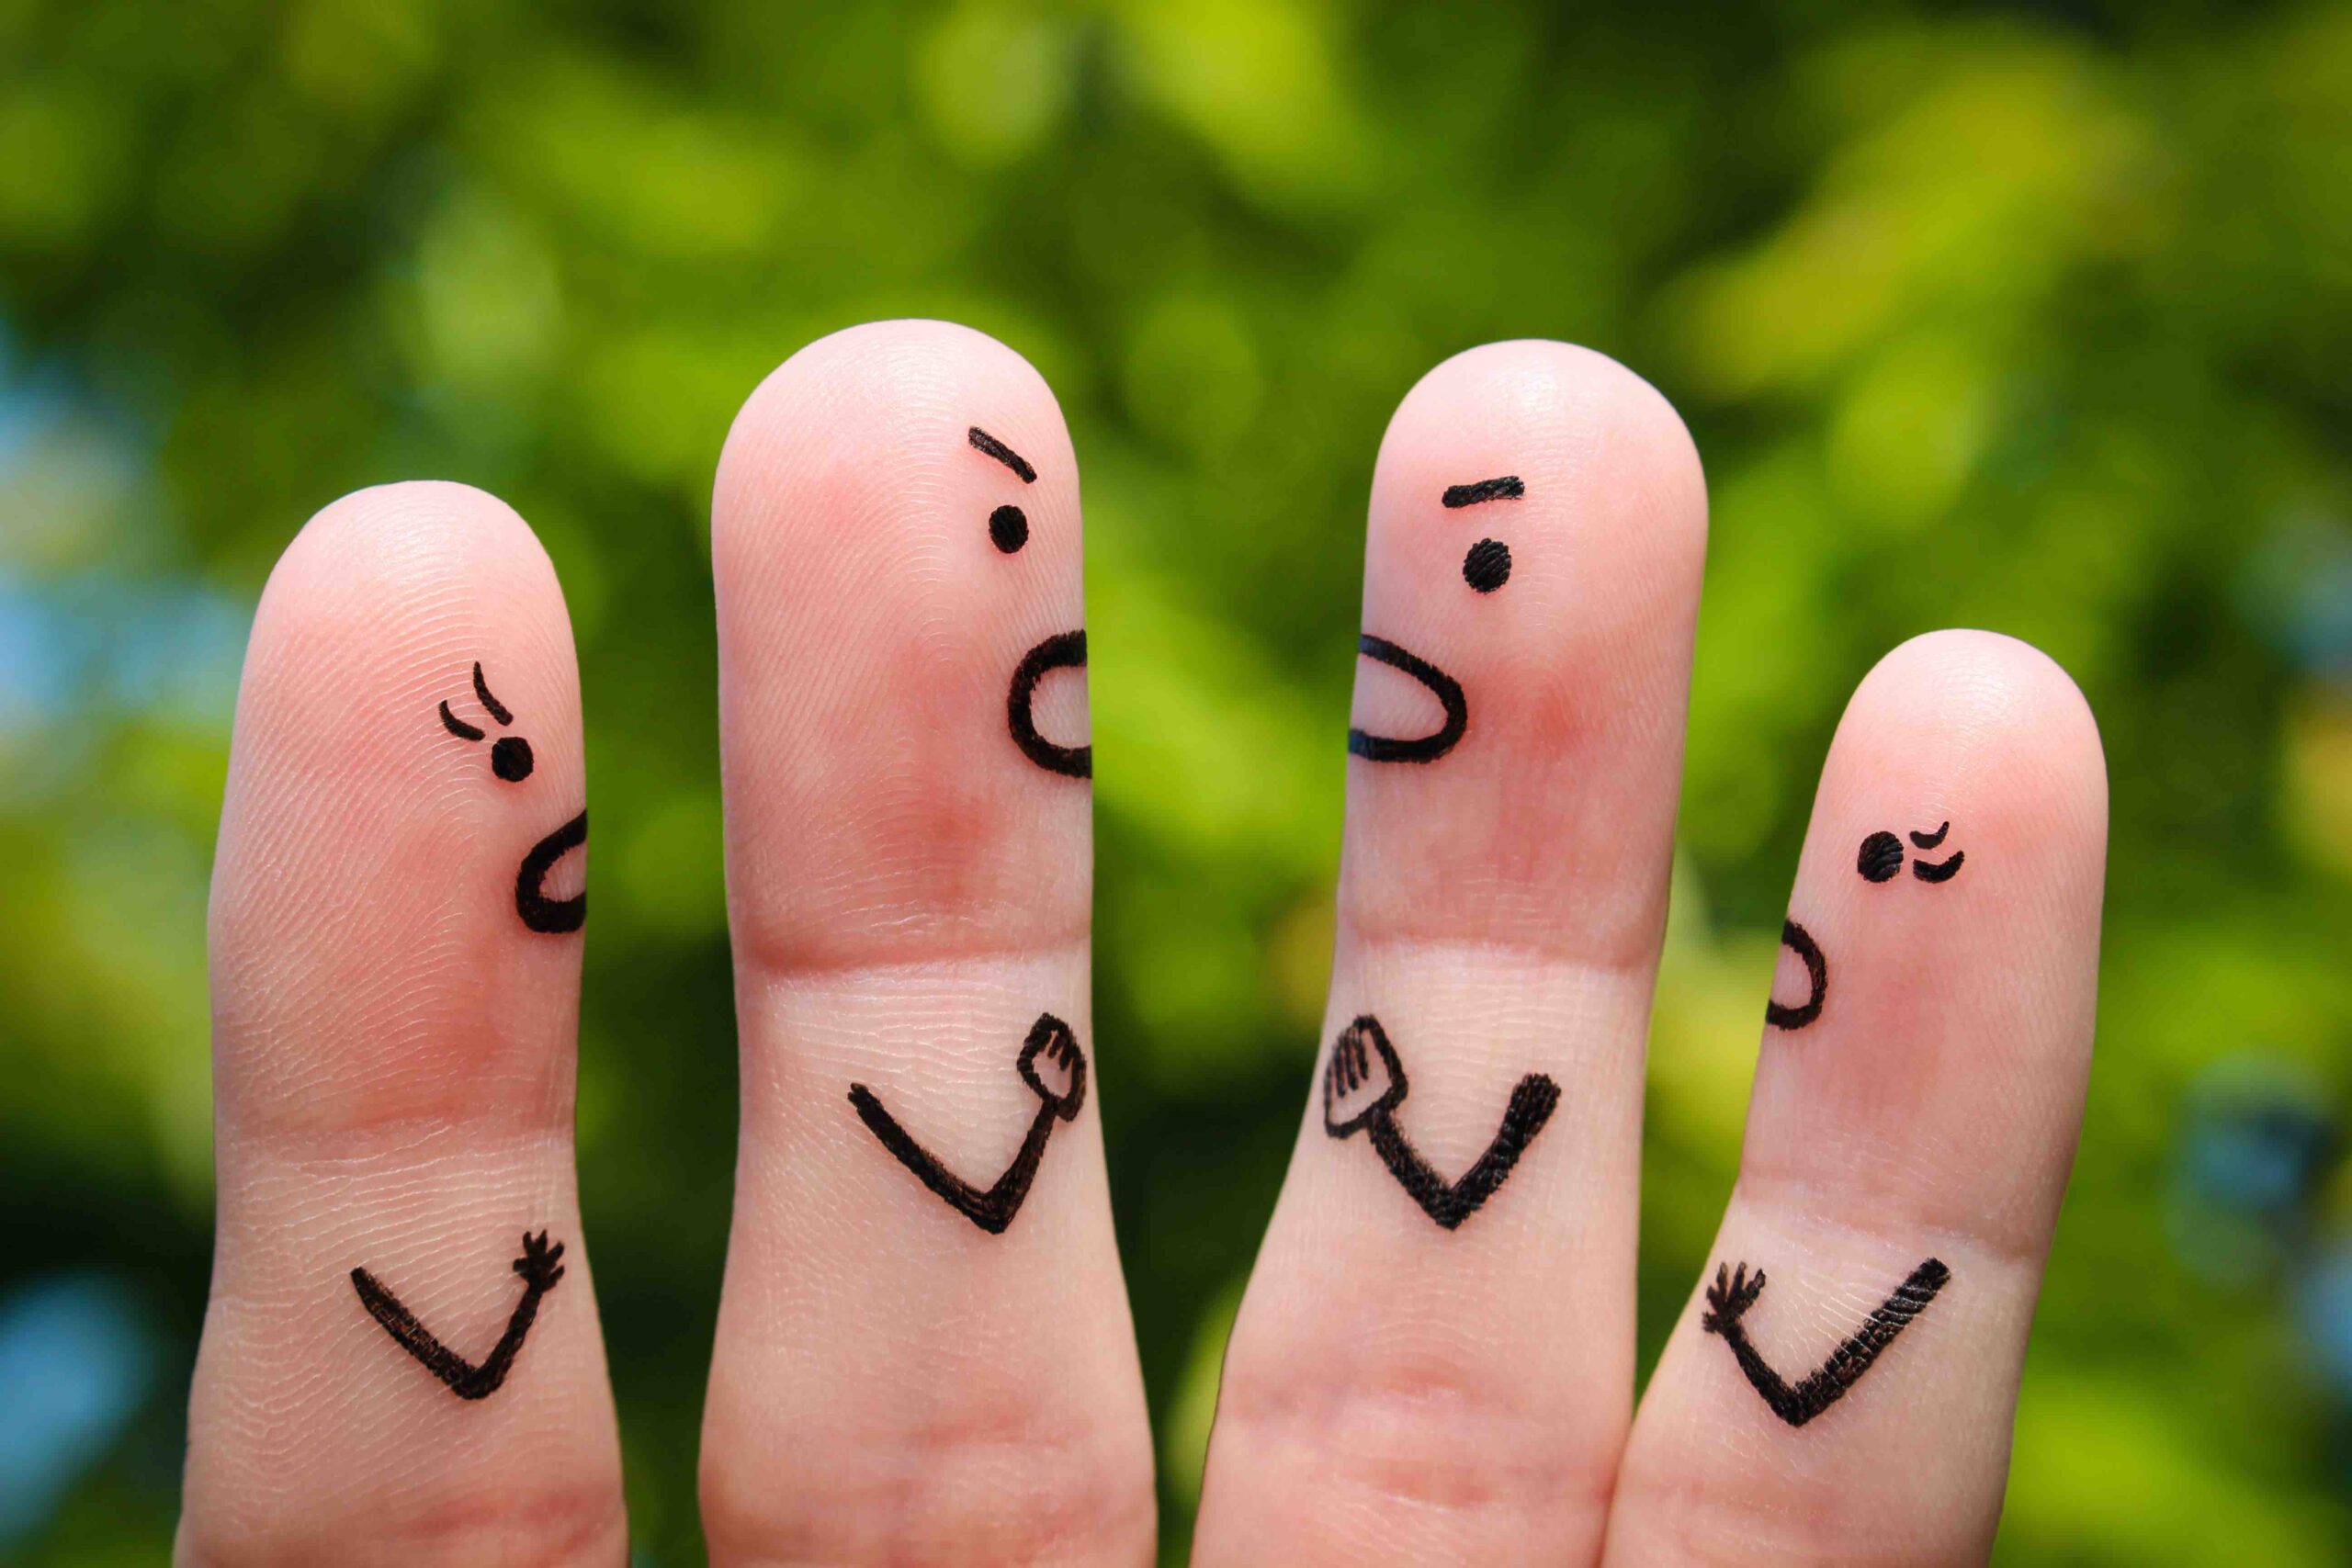 Finger art of people during quarrel. - Image